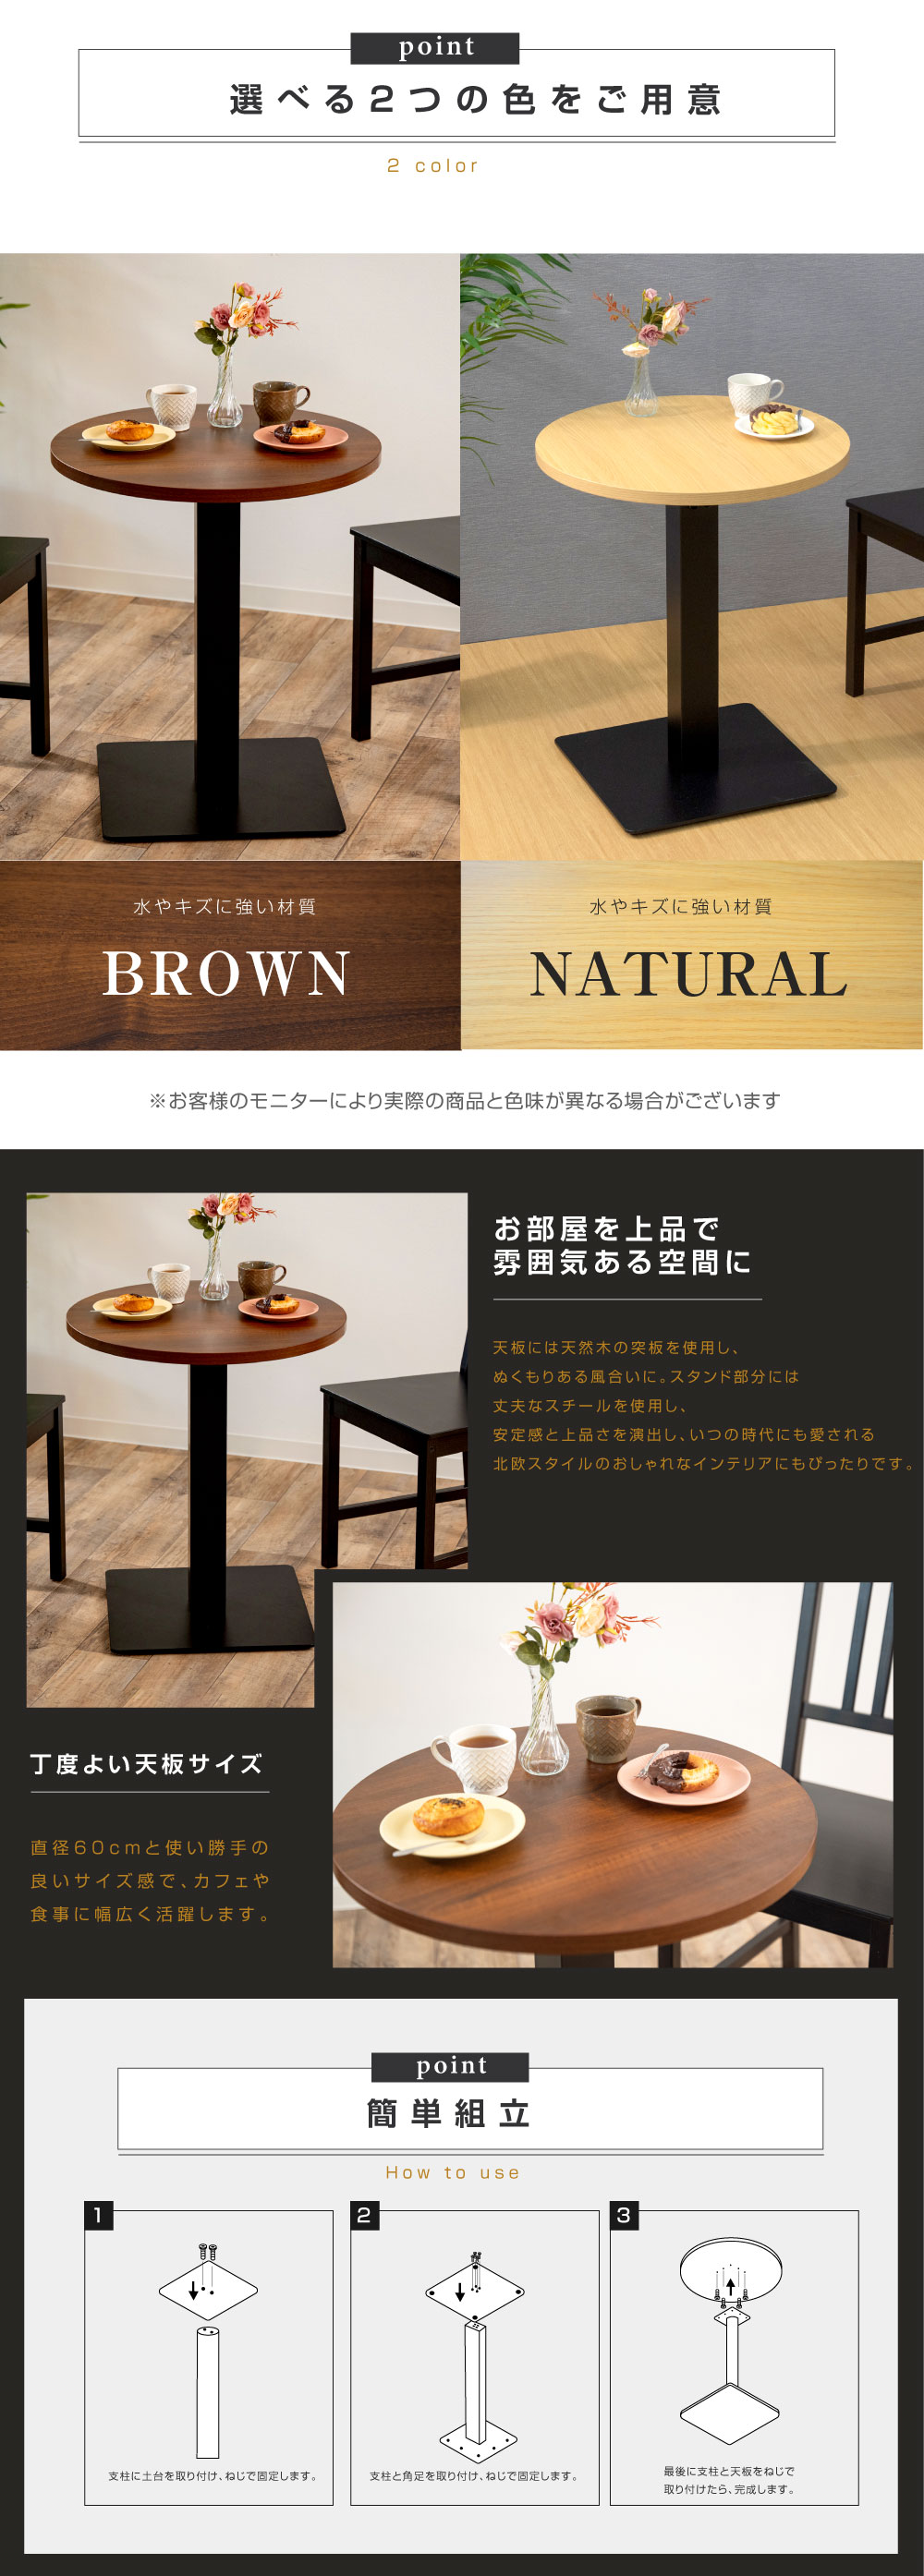 高昇ストア / 木製 丸型 カウンターテーブル 業務用レストランテーブル 